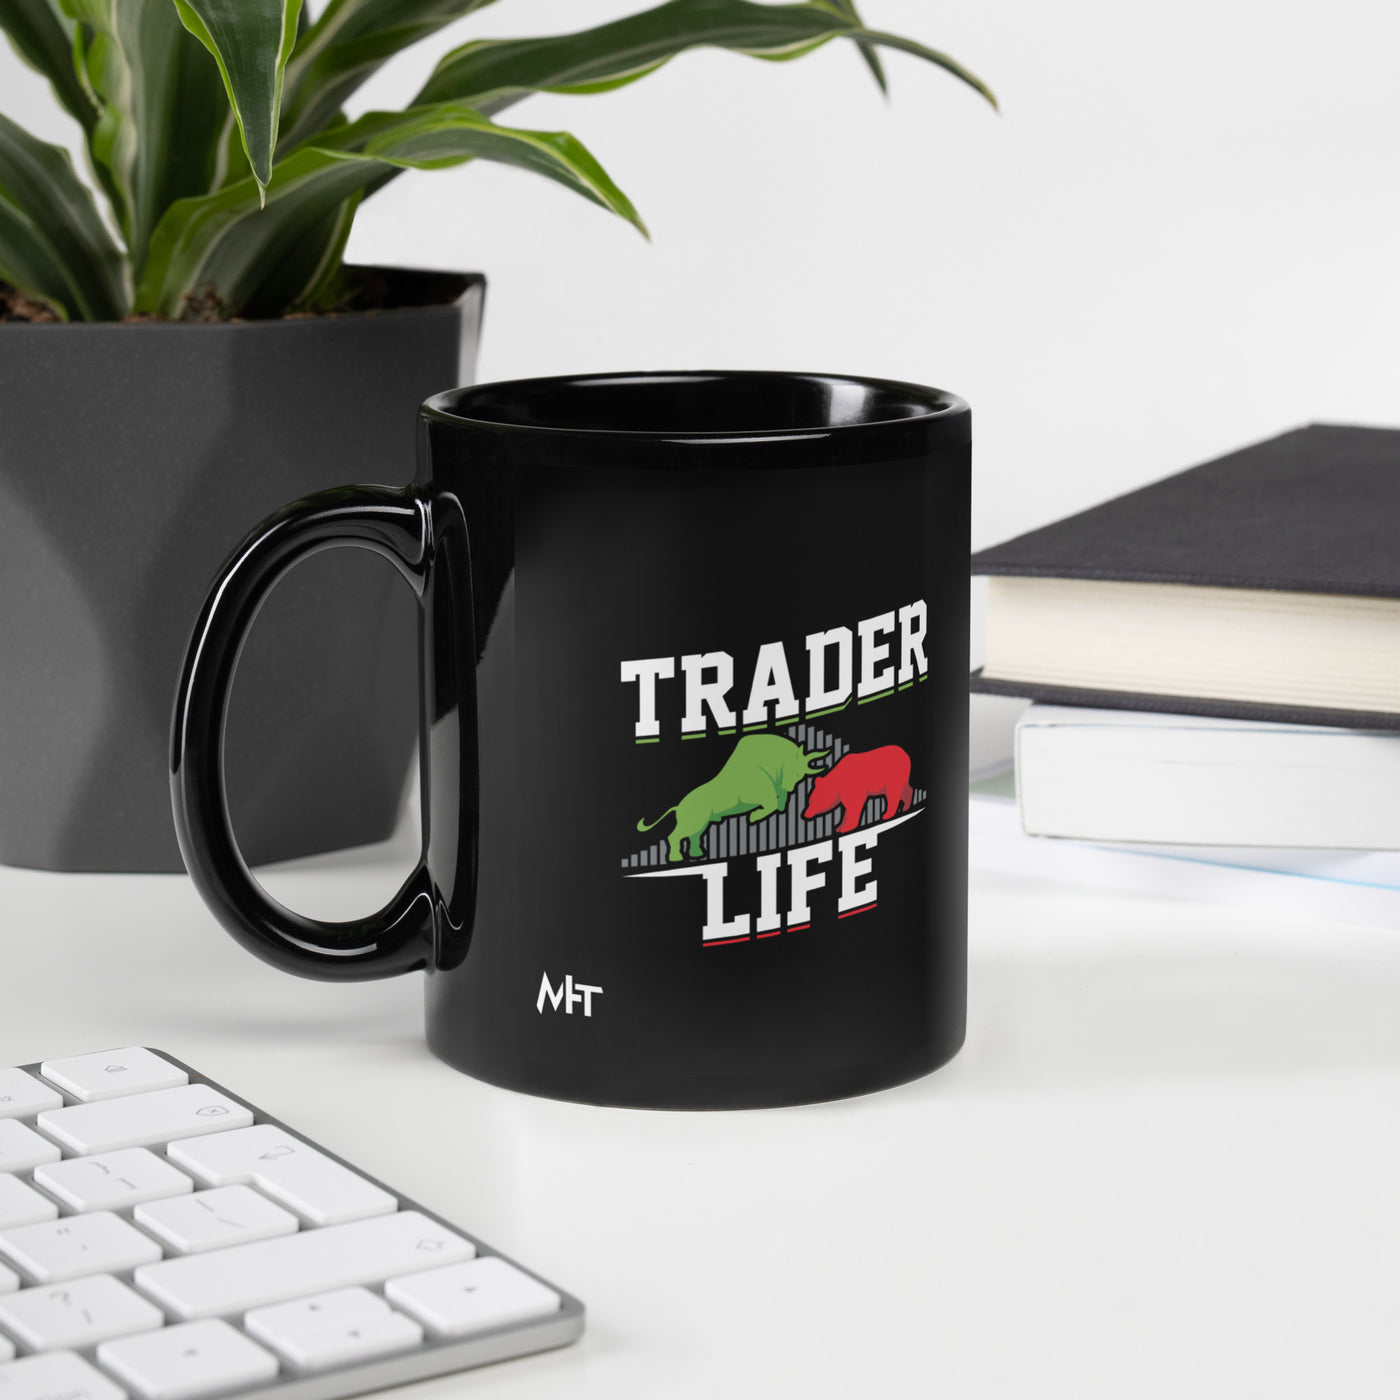 Trader life - Black Glossy Mug